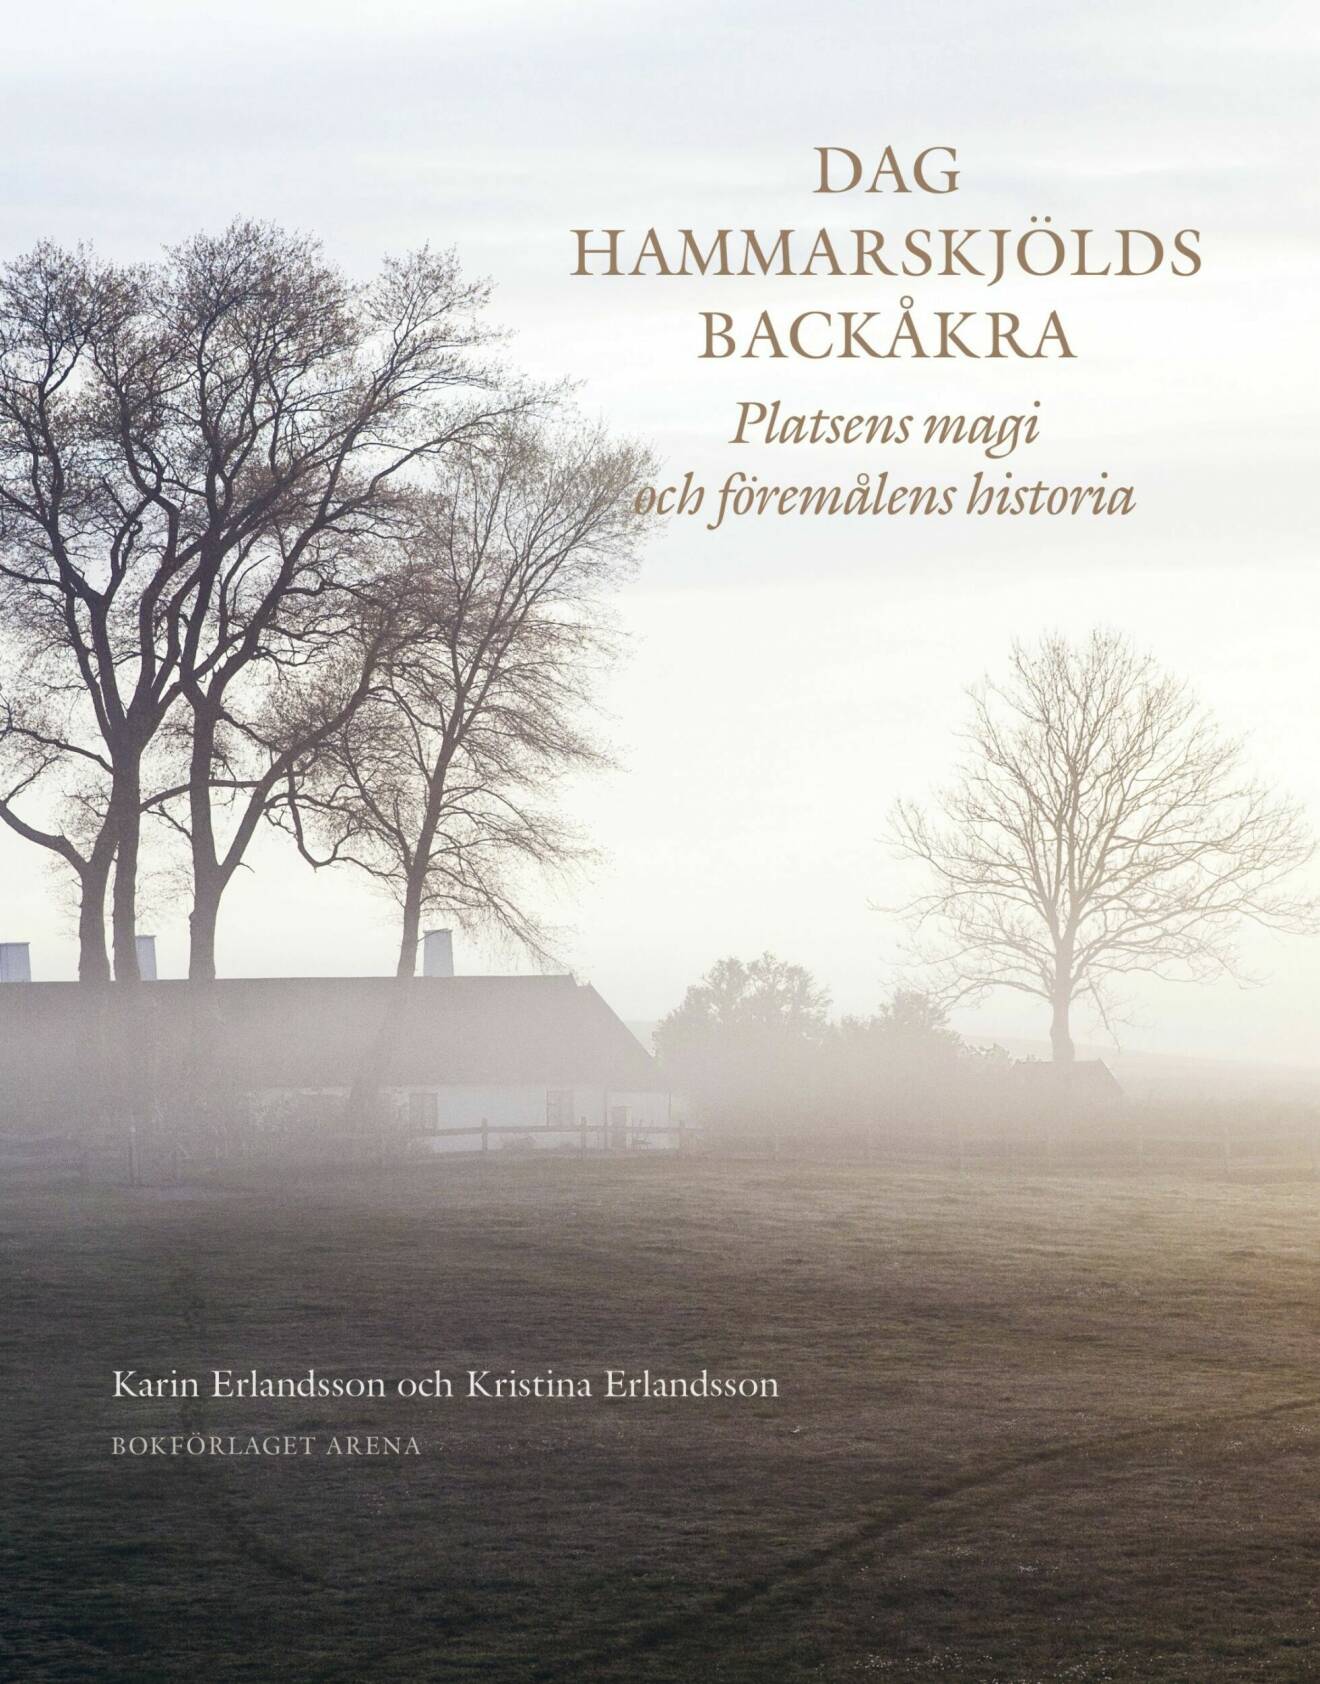 Dag Hammarskjölds Backåkra: Platsens magi och föremålens historia av Karin Erlandsson och Kristina Erlandsson, (Bokförlaget Arena).